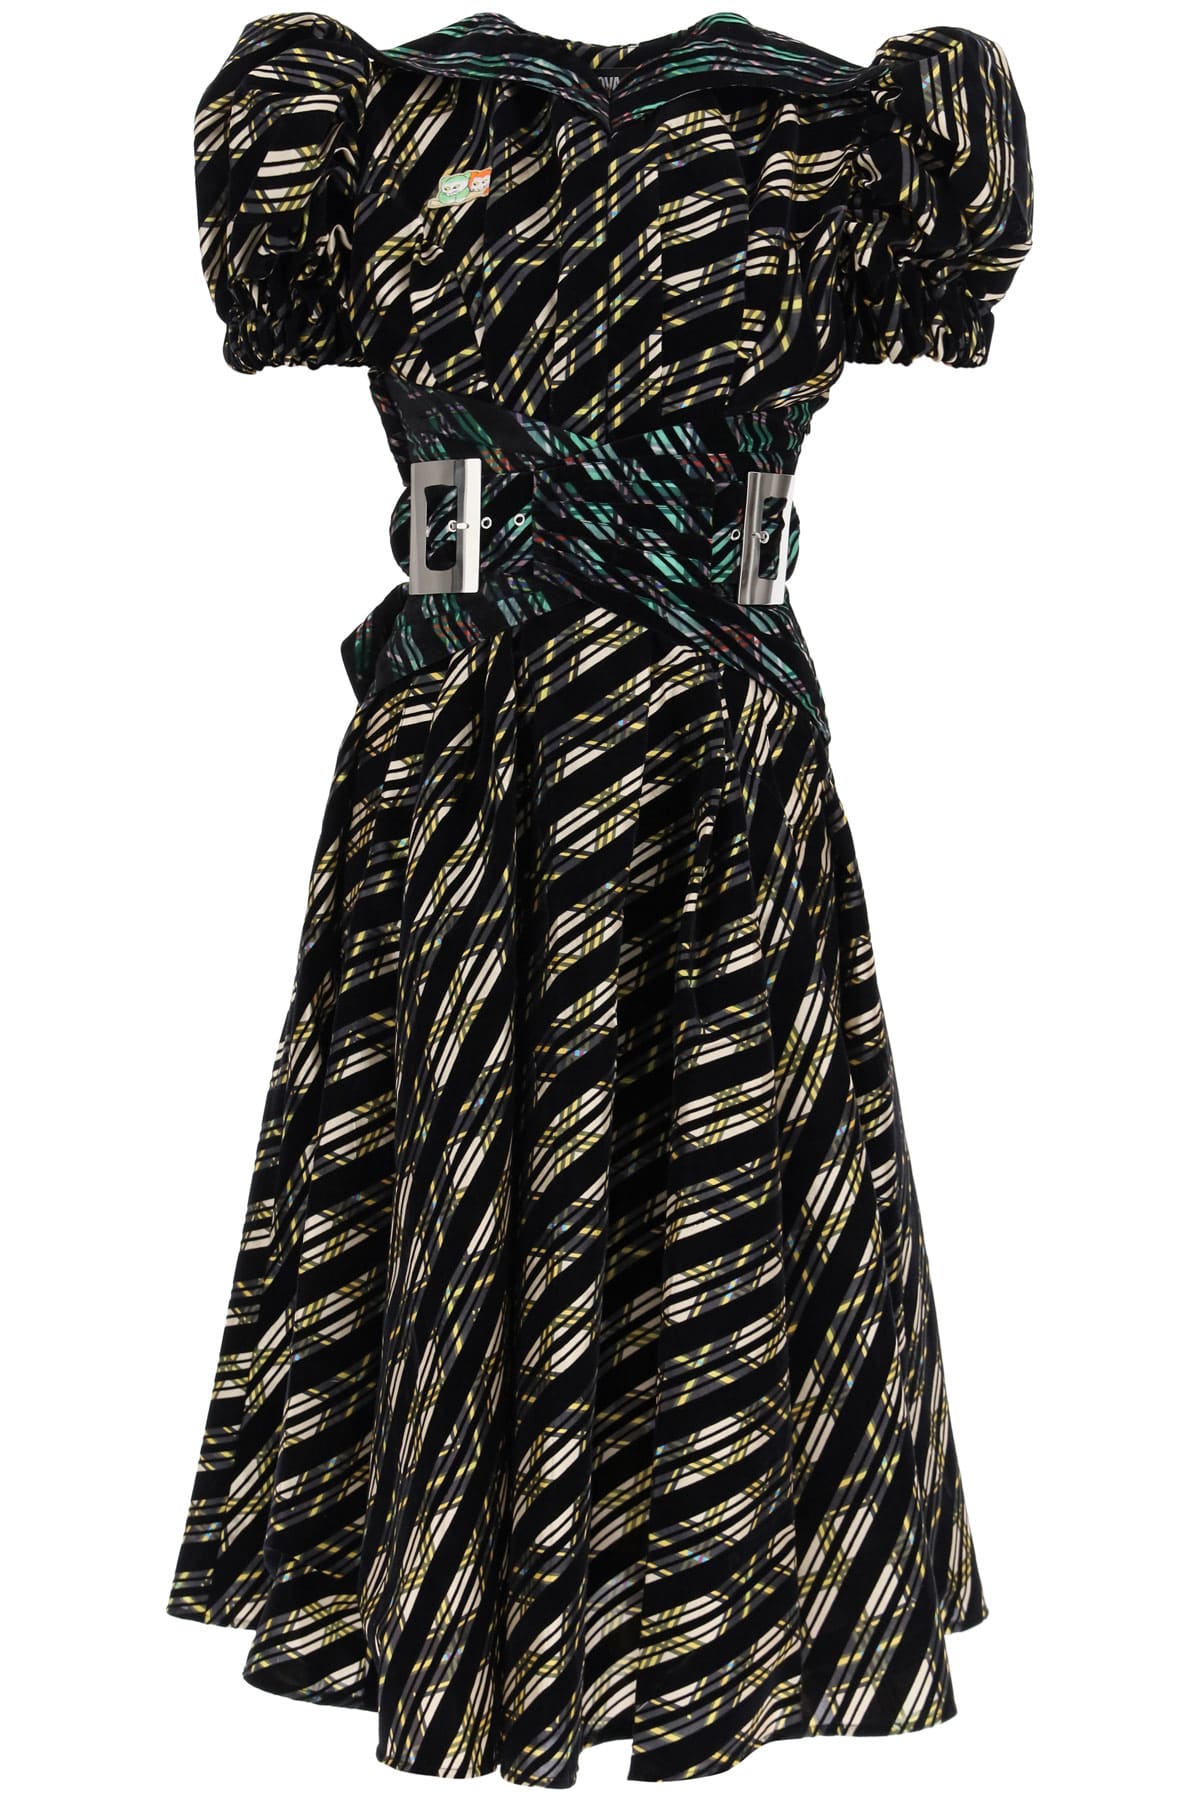 Chopova Lowena Midi Dress In Organza